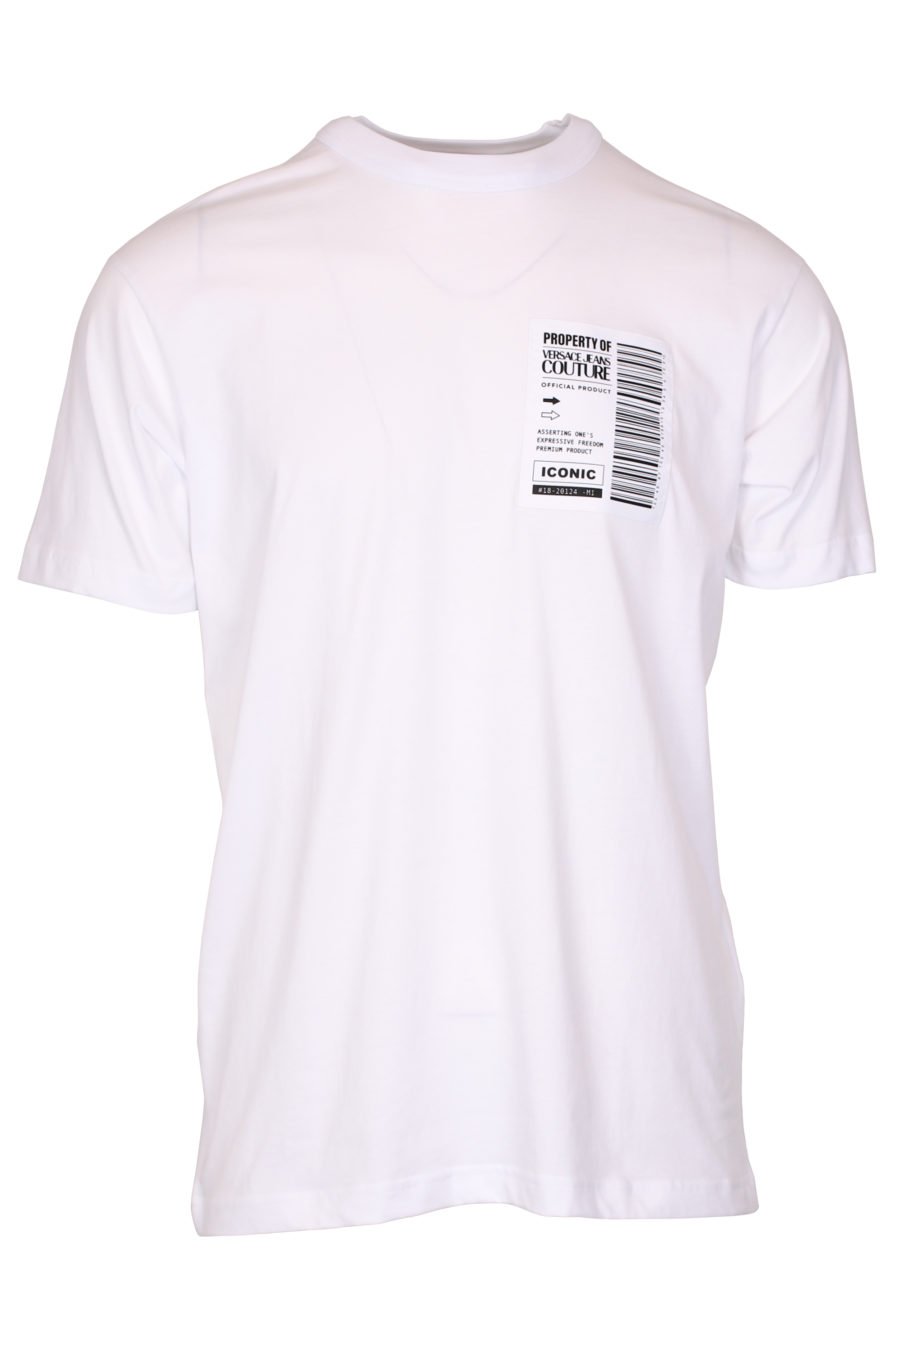 Camiseta blanca con logo código de barras - IMG 9345